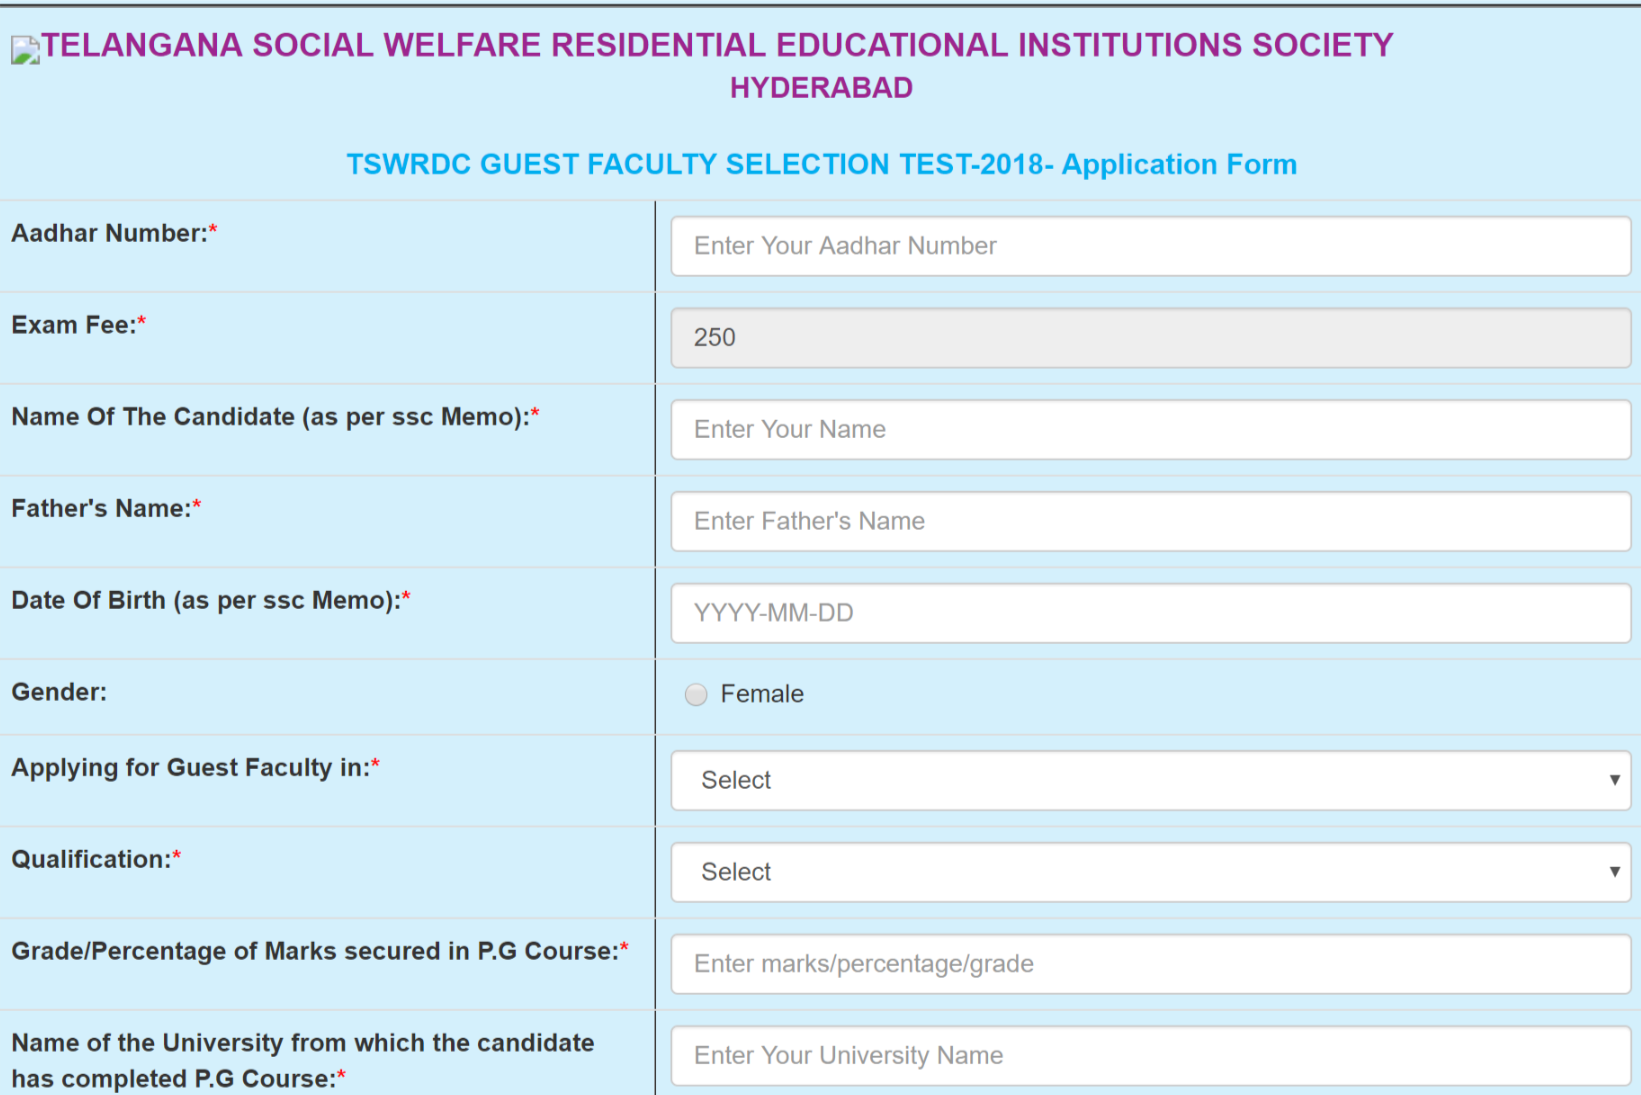 TSWREIS Women Guest Faculty Application released @www.tswreis.in